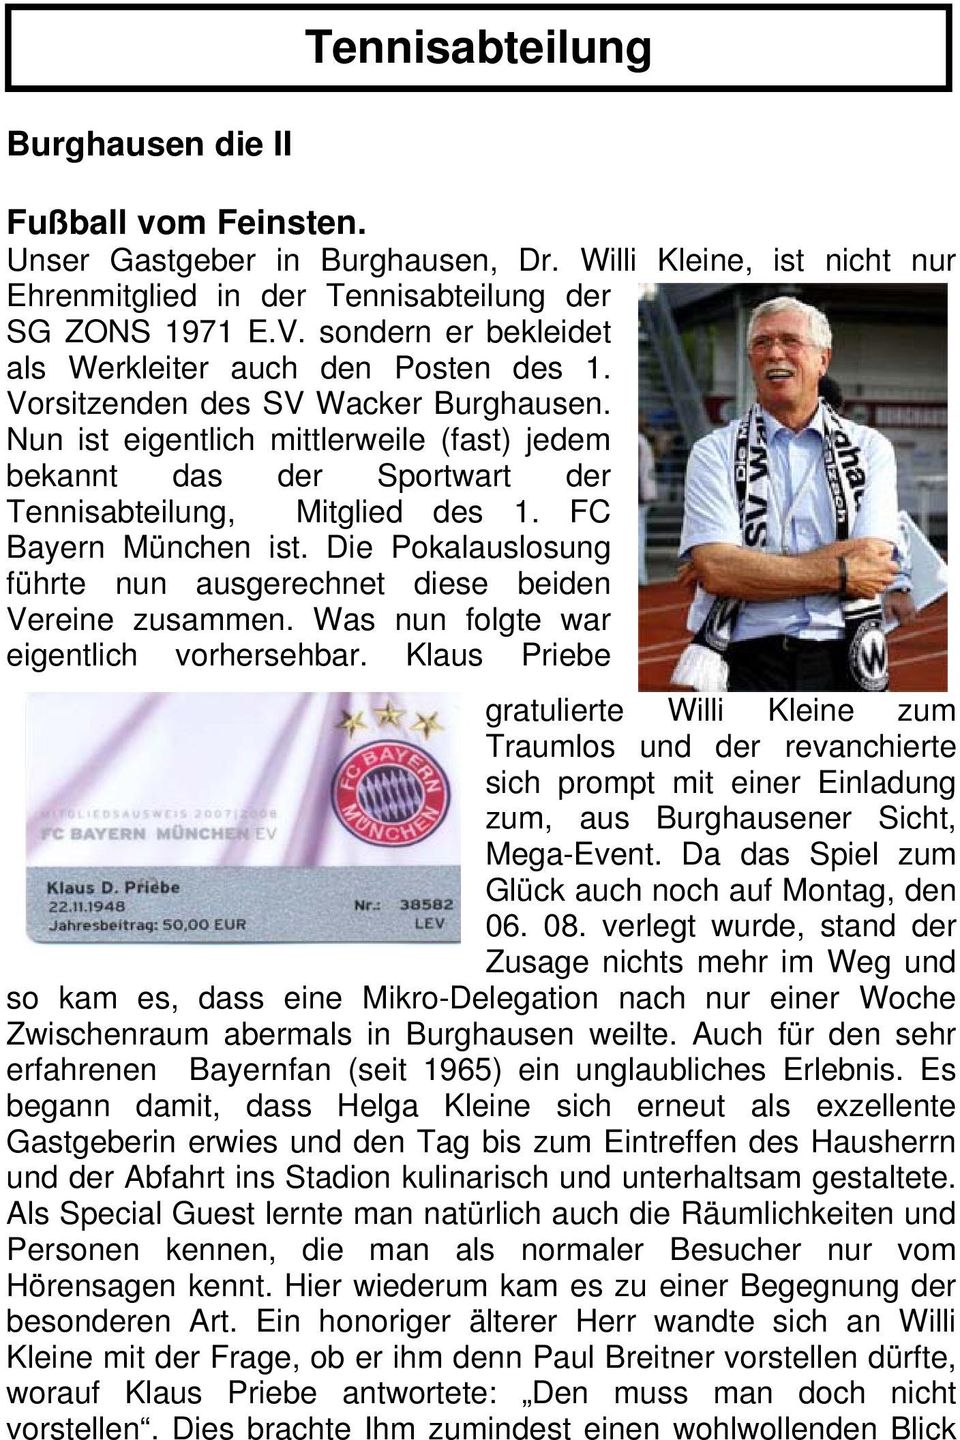 Nun ist eigentlich mittlerweile (fast) jedem bekannt das der Sportwart der Tennisabteilung, Mitglied des 1. FC Bayern München ist.